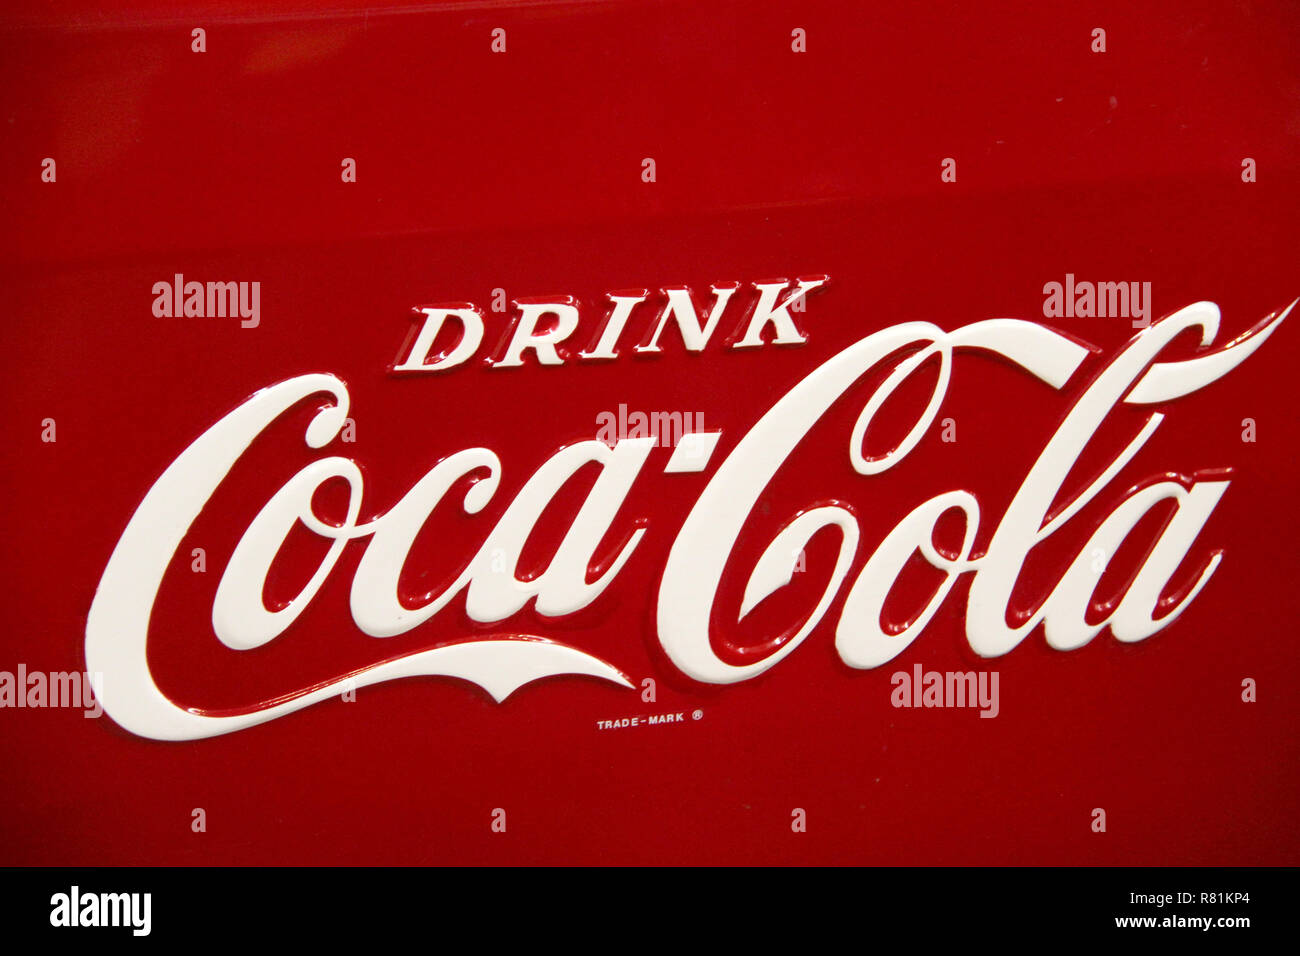 Cola coca tag slogan